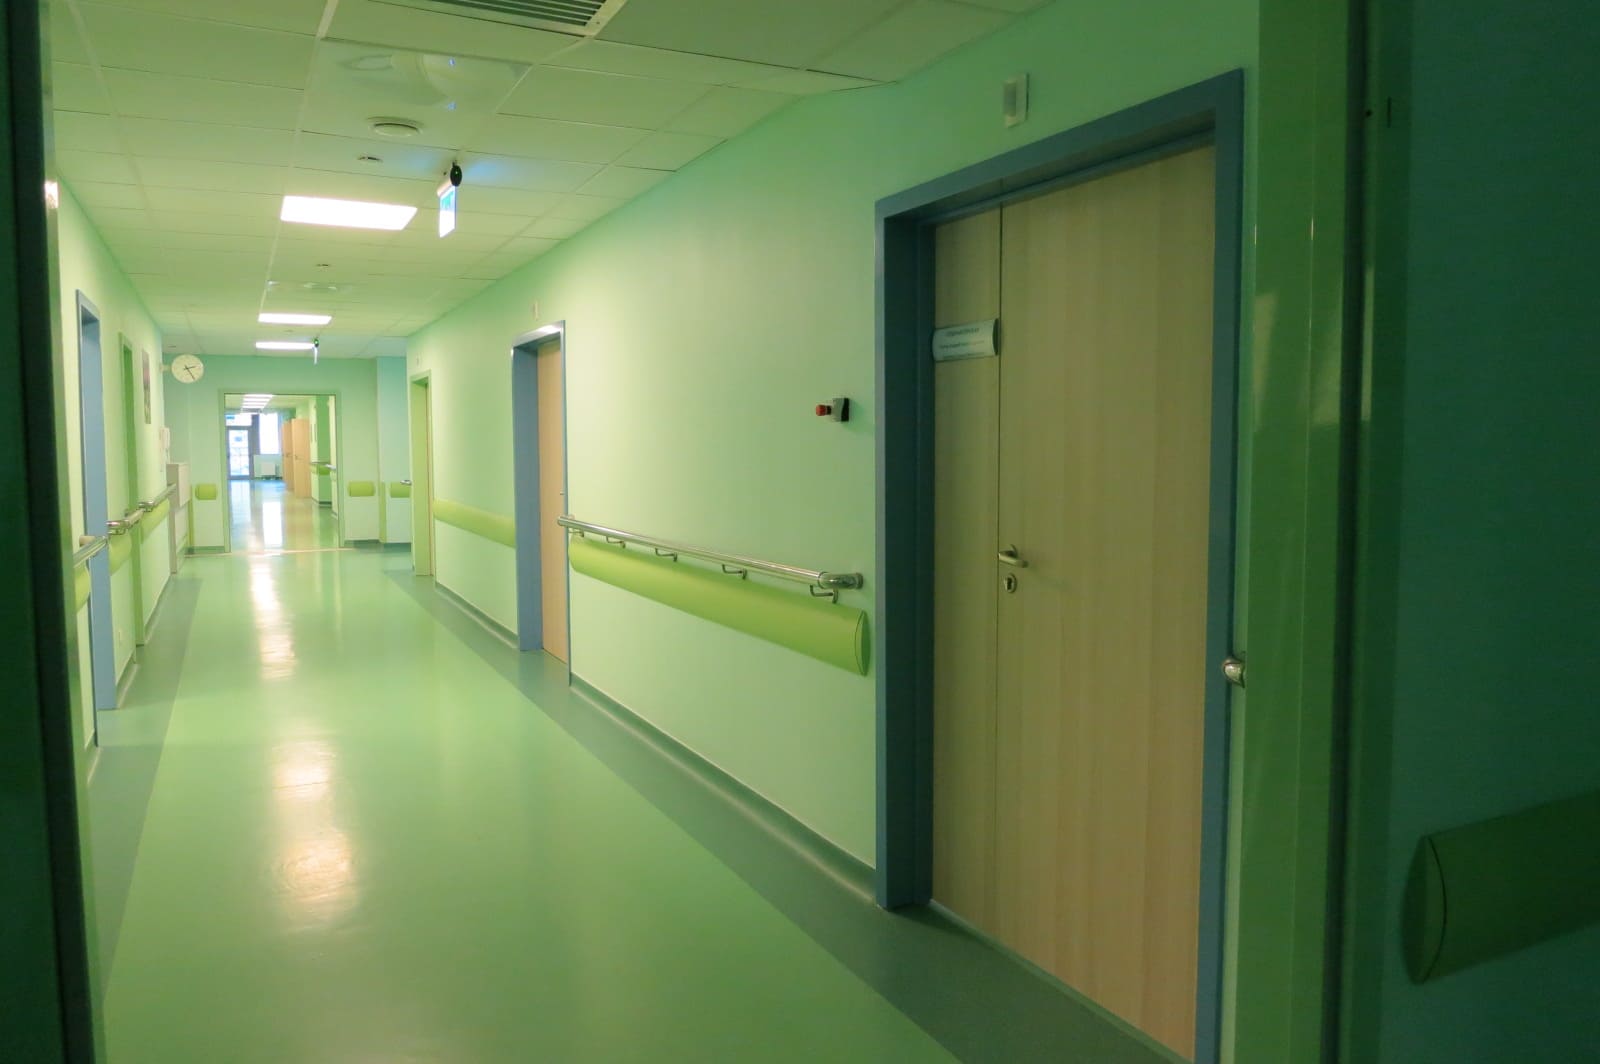 Двери, облицованные пластиком HPL, в коридоре больницы